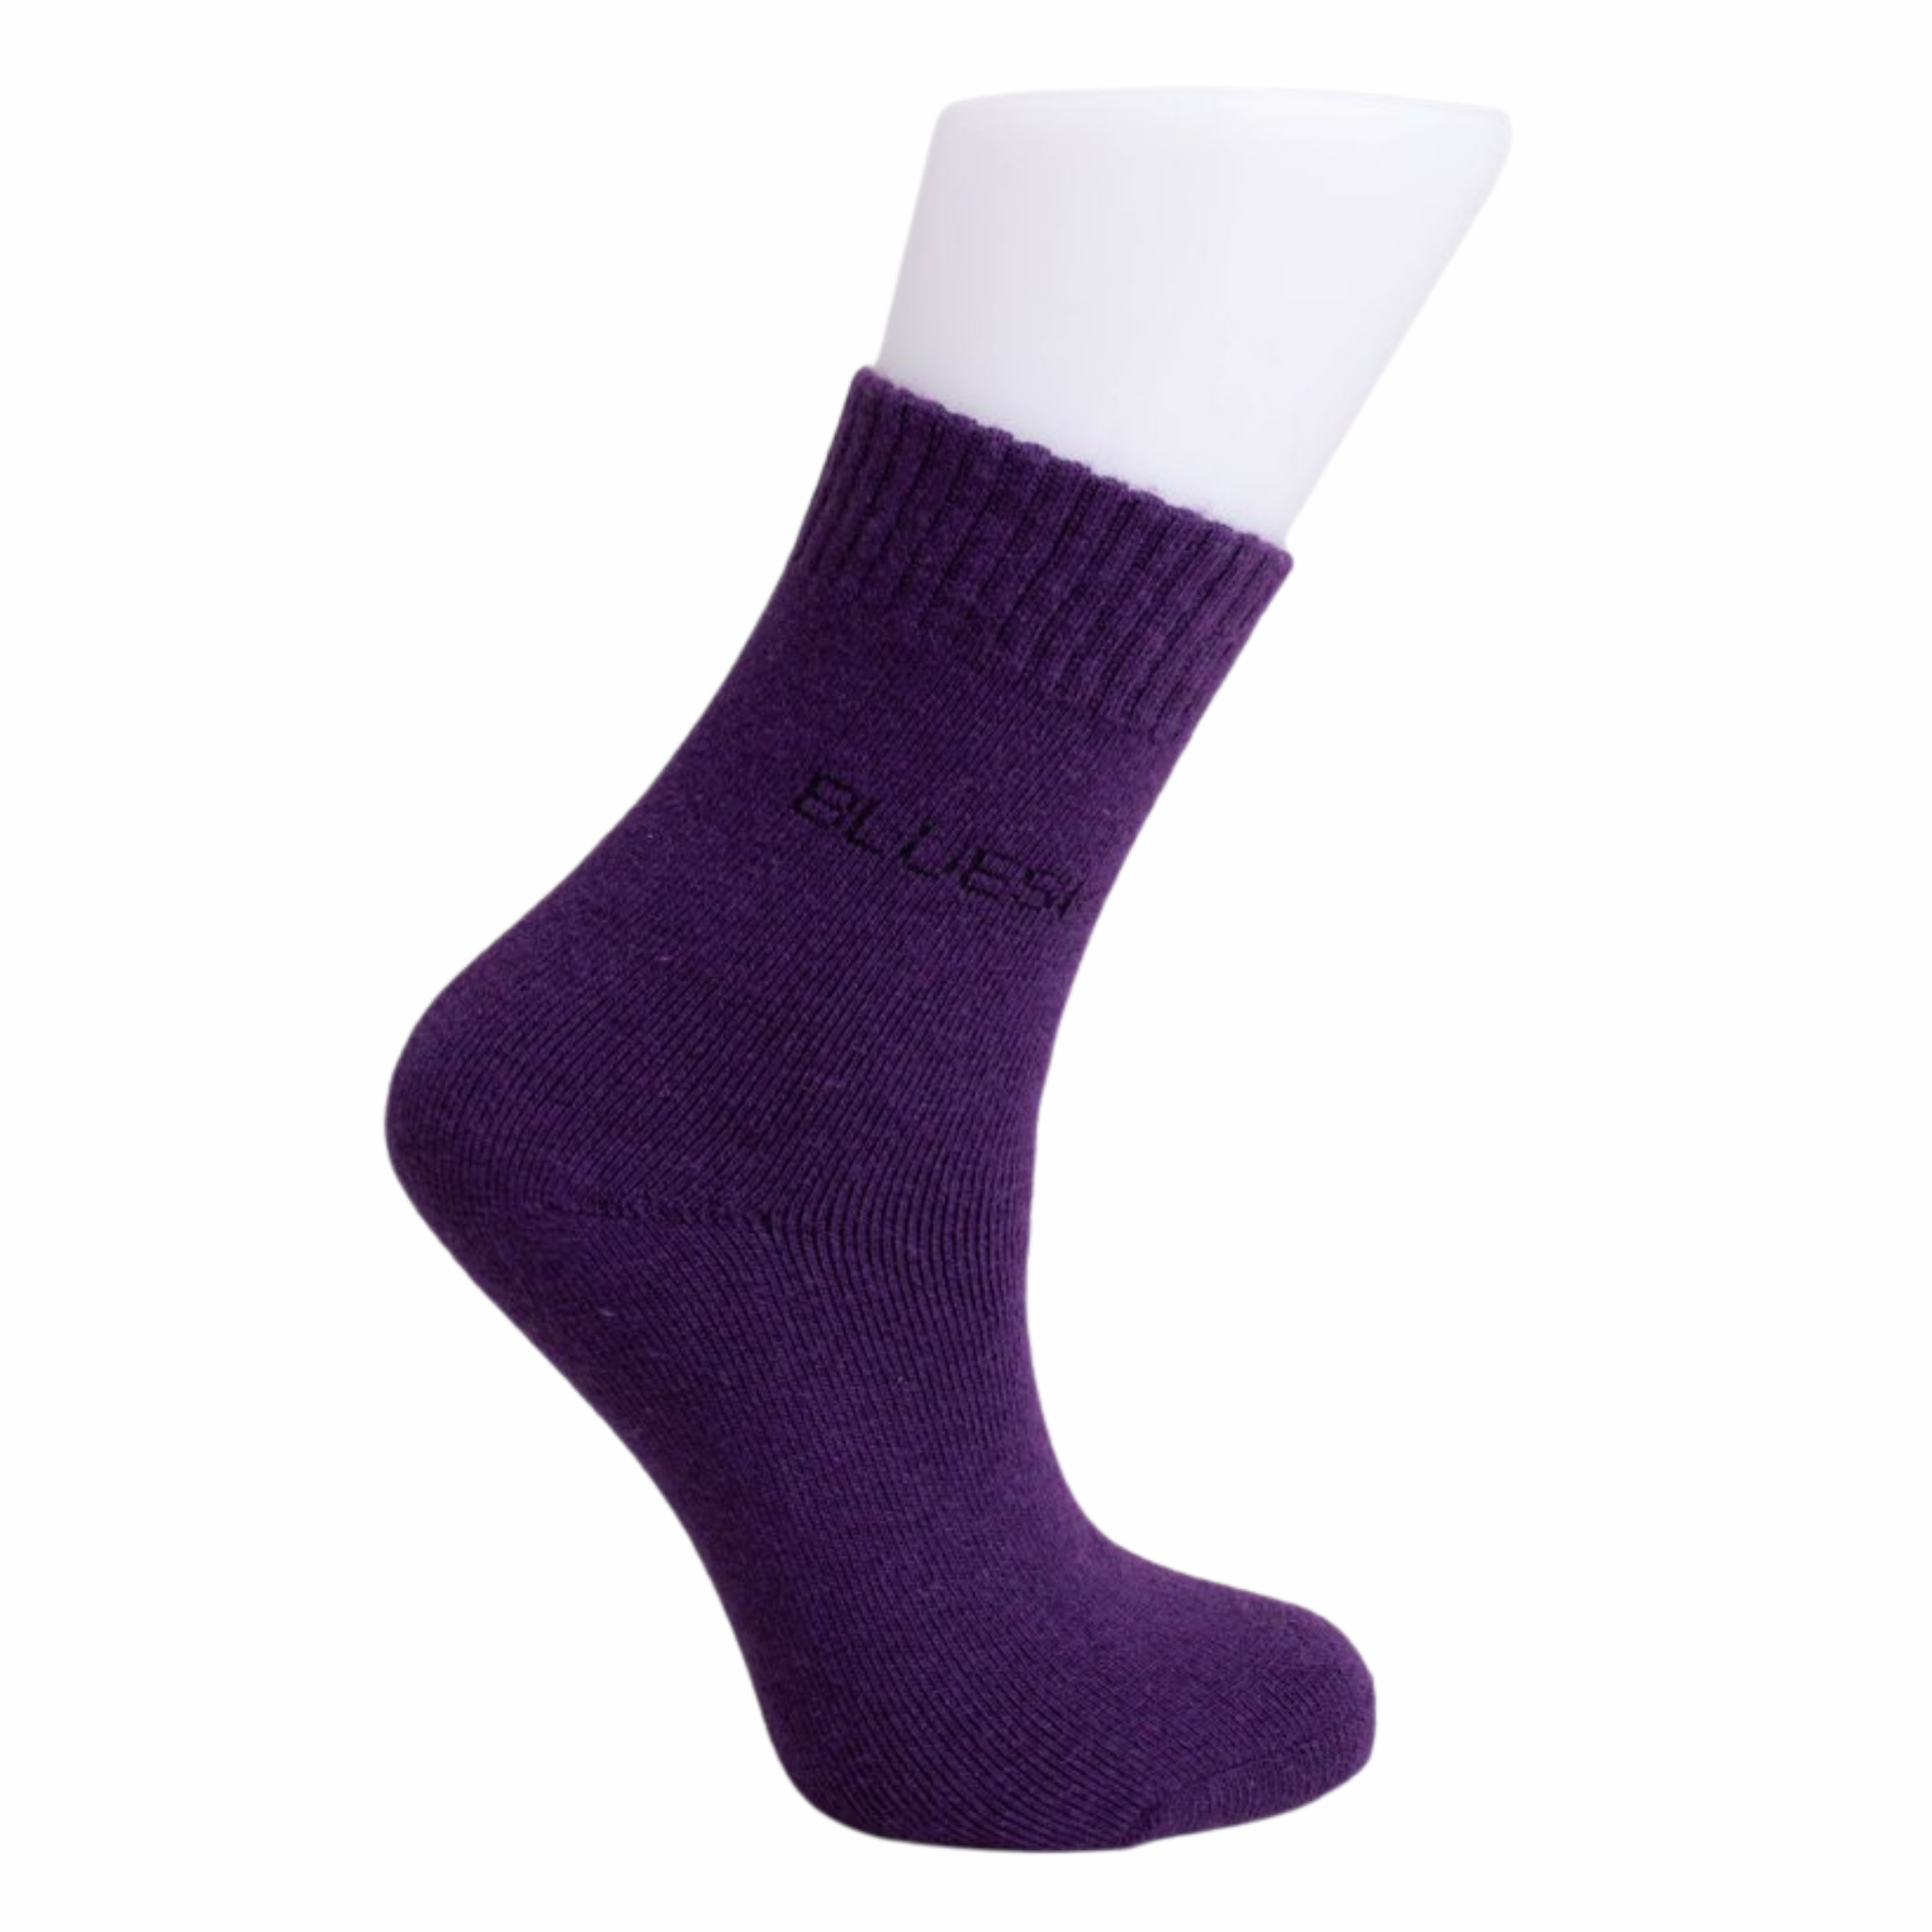 Barefoot wool socks for kids - Magical Socks Merino - NAVY